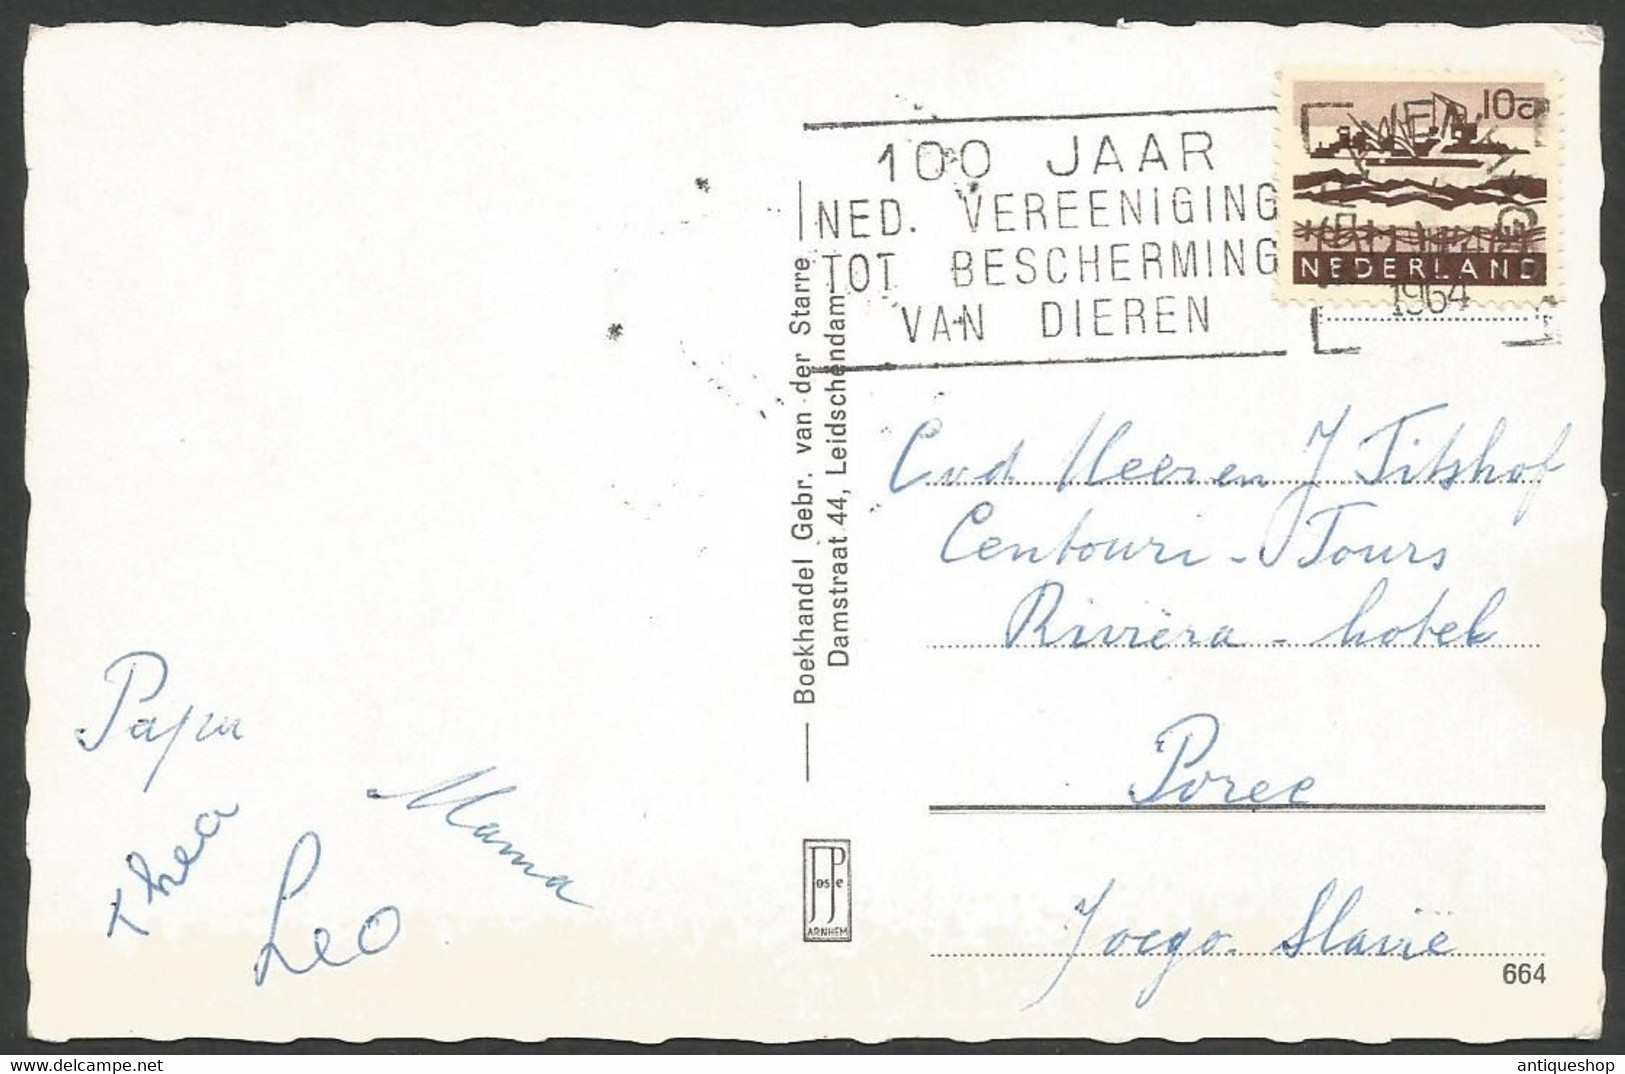 Netherlands-----Leidschendam-----old Postcard - Leidschendam